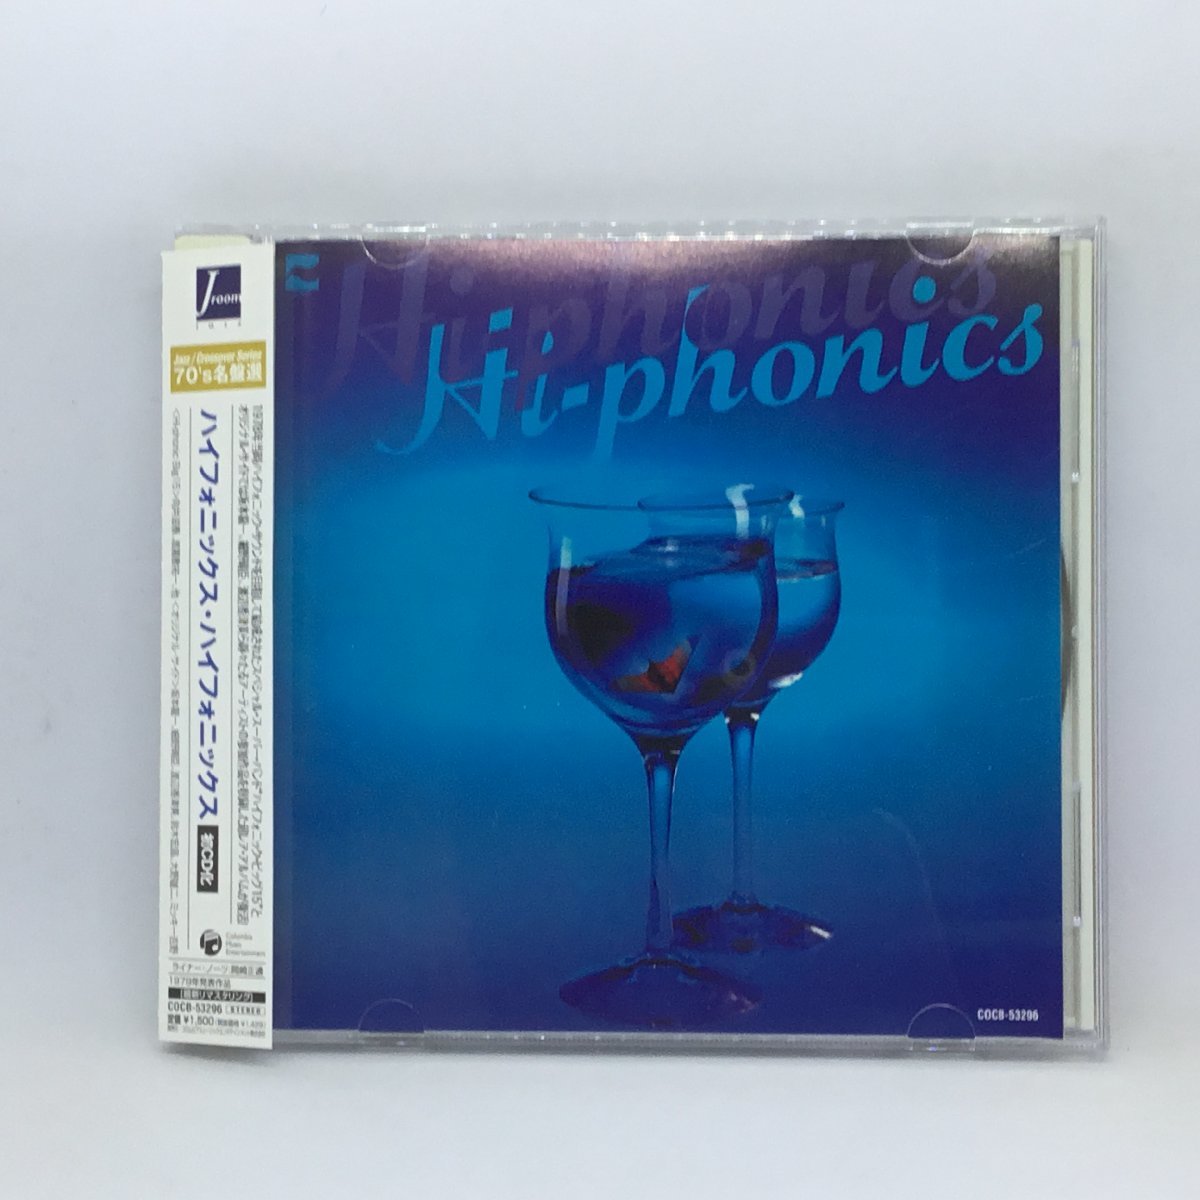 ハイフォニックス・ハイフォニックス / HI-PHONICS HI-PHONICS (CD) COCB-53296_画像1